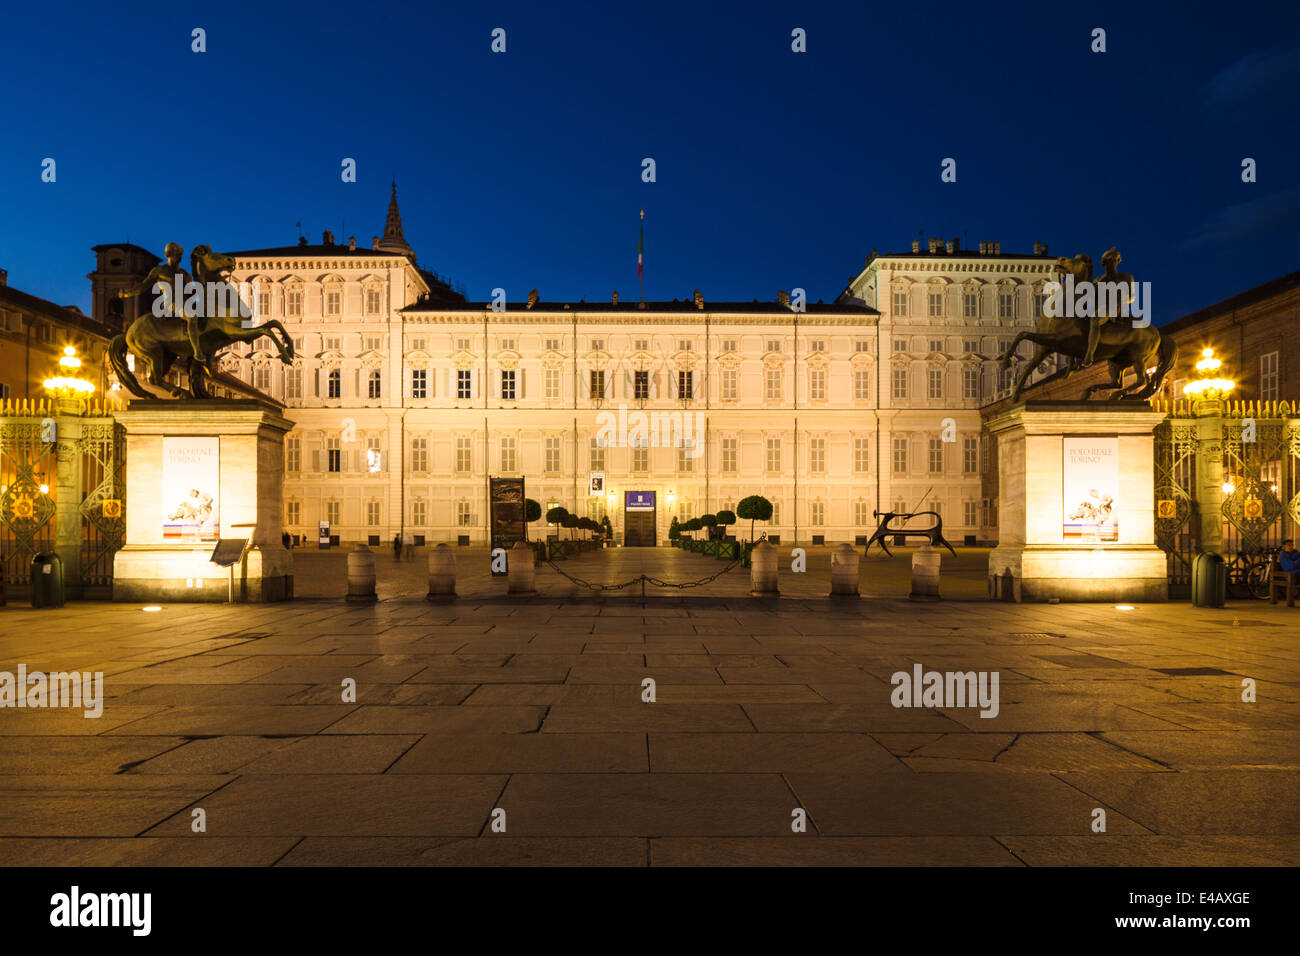 Der Palazzo Reale in der Nacht, Turin, Italien. Stockfoto